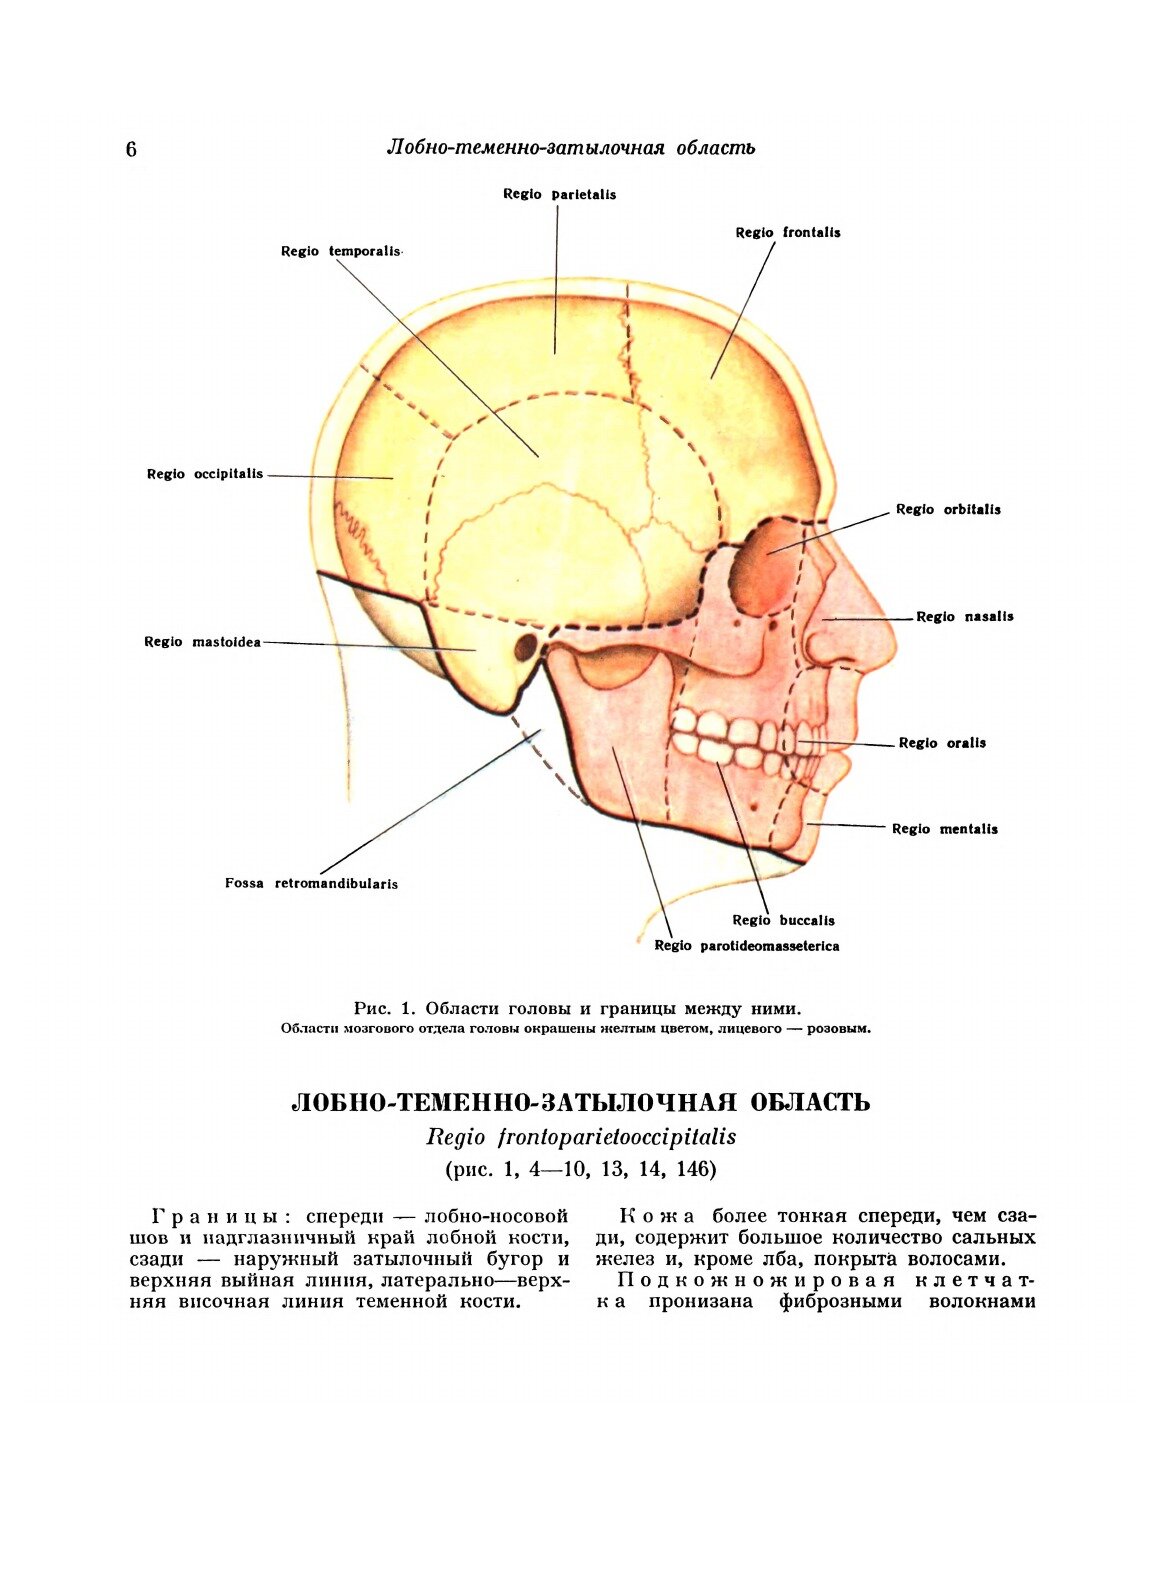 Атлас топографической анатомии человека - фото №5